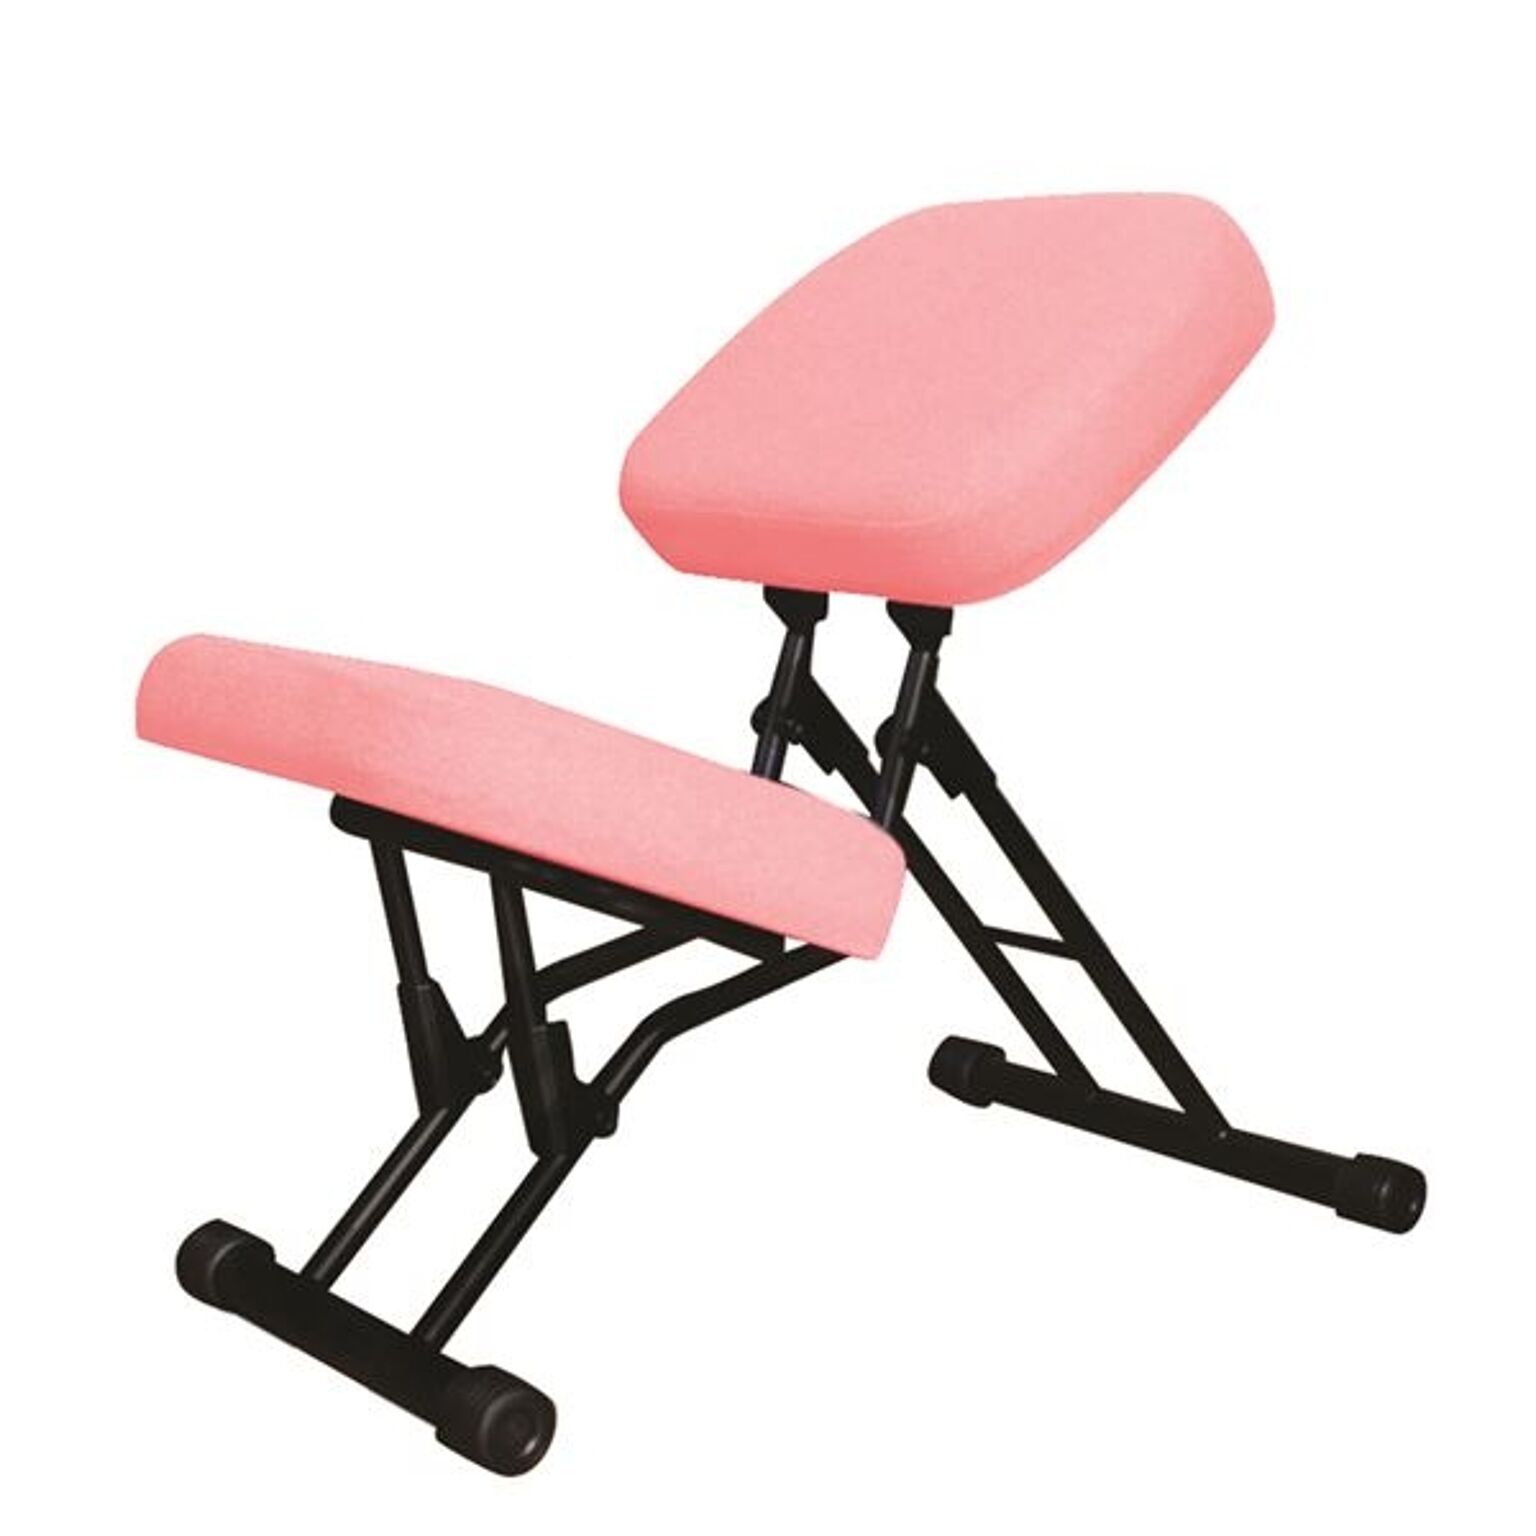 学習椅子/ワークチェア 【ピンク×ブラック】 幅440mm 日本製 折り畳み スチールパイプ 『セブンポーズチェア』【代引不可】